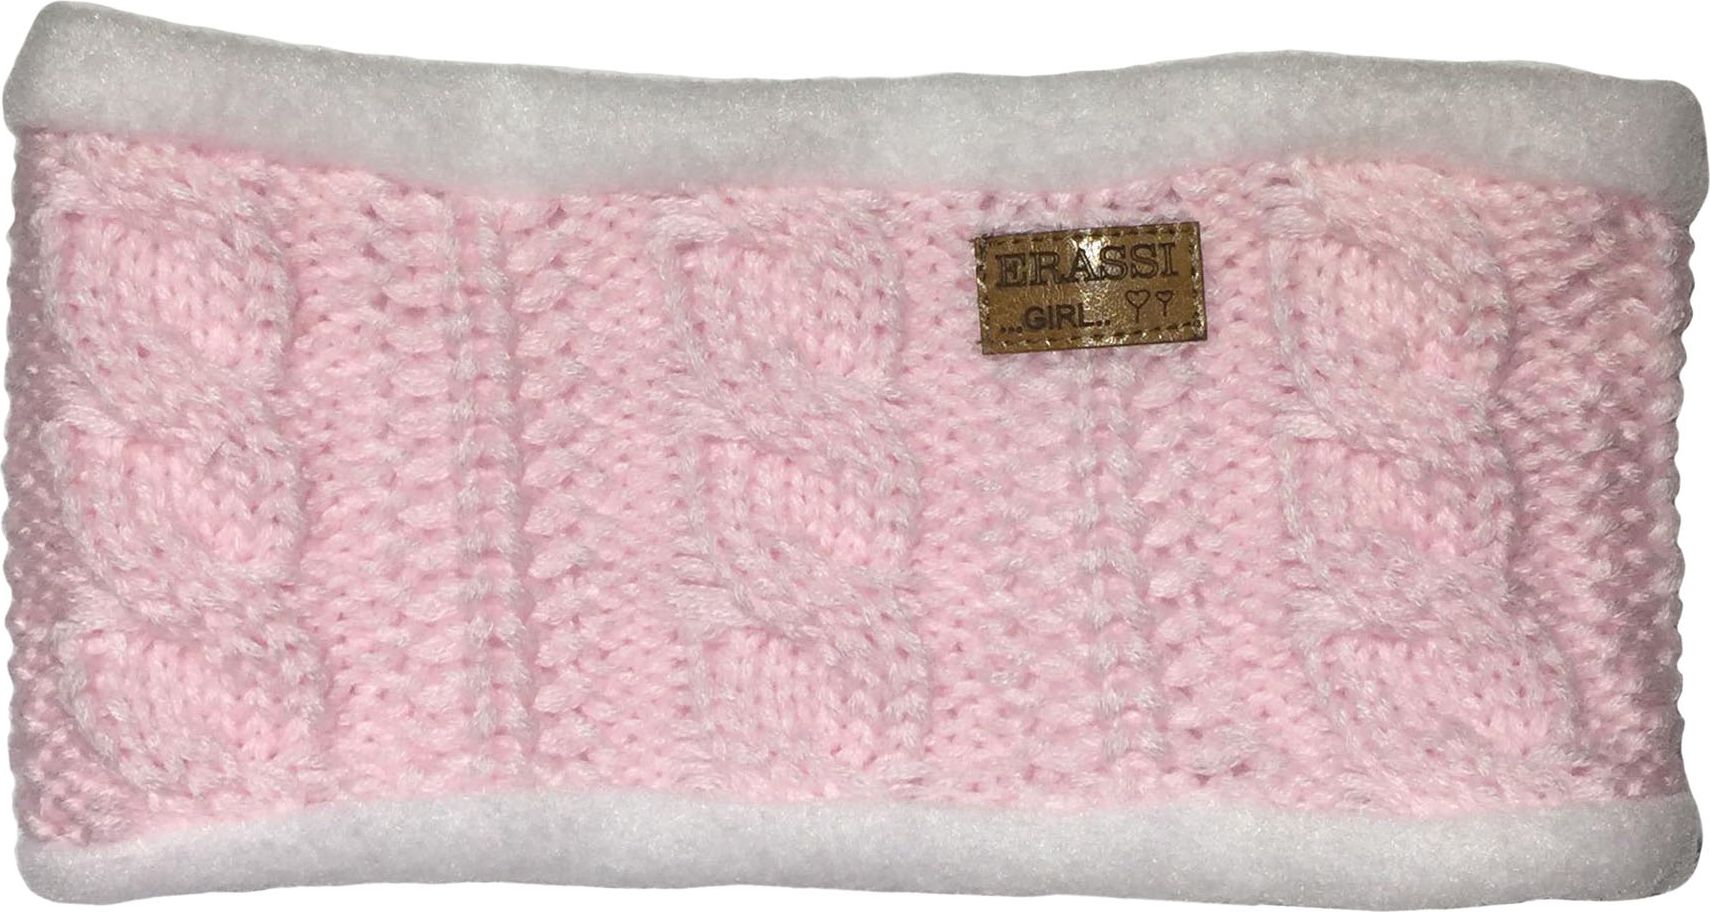 erassi Dívčí pletený nákrčník světle růžový - obrázek 1